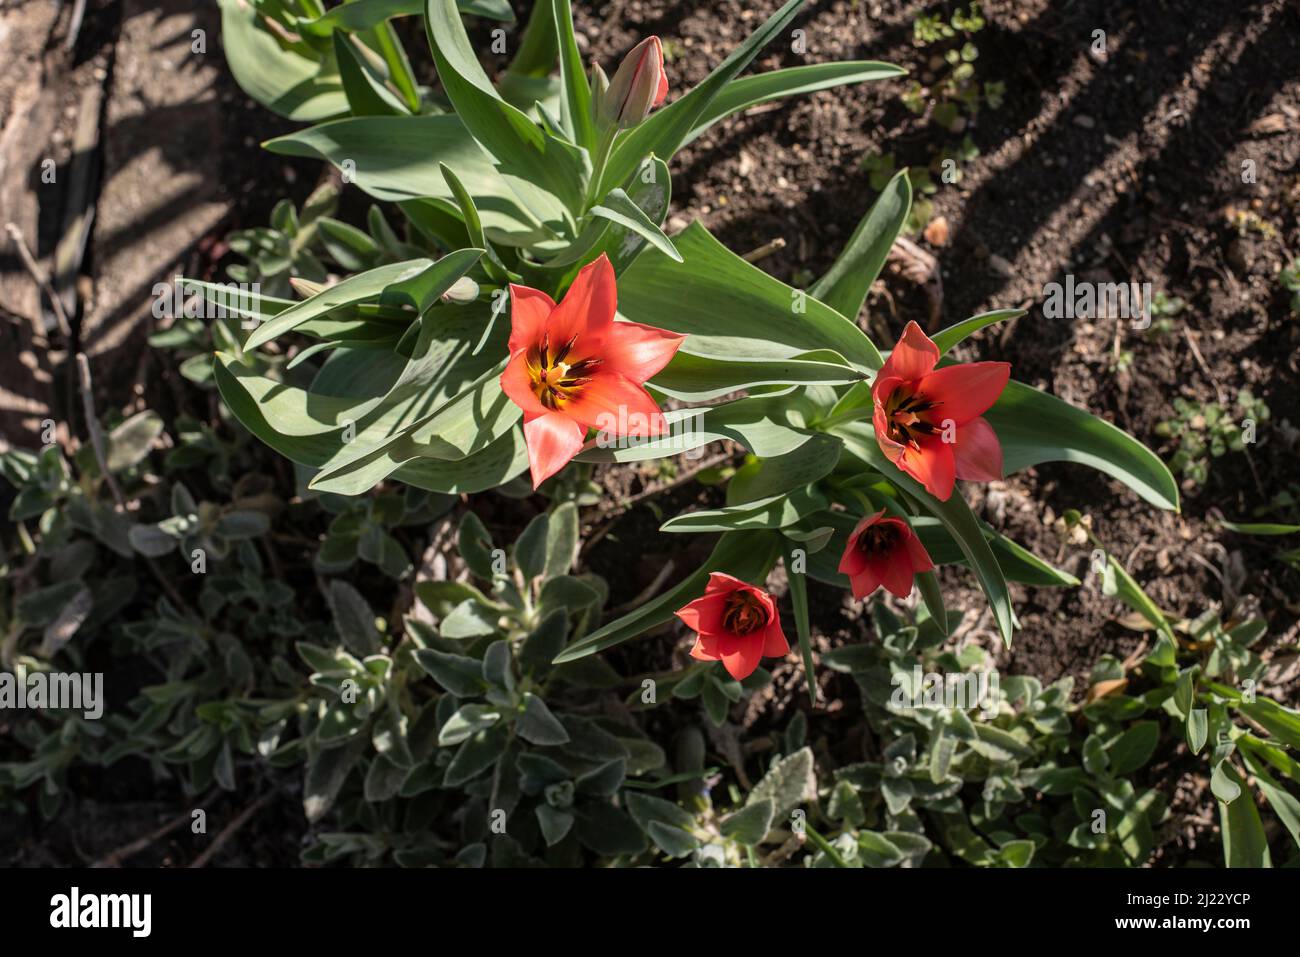 las flores abiertas de tulipanes con pétalos rojos en un jardín en primavera Foto de stock